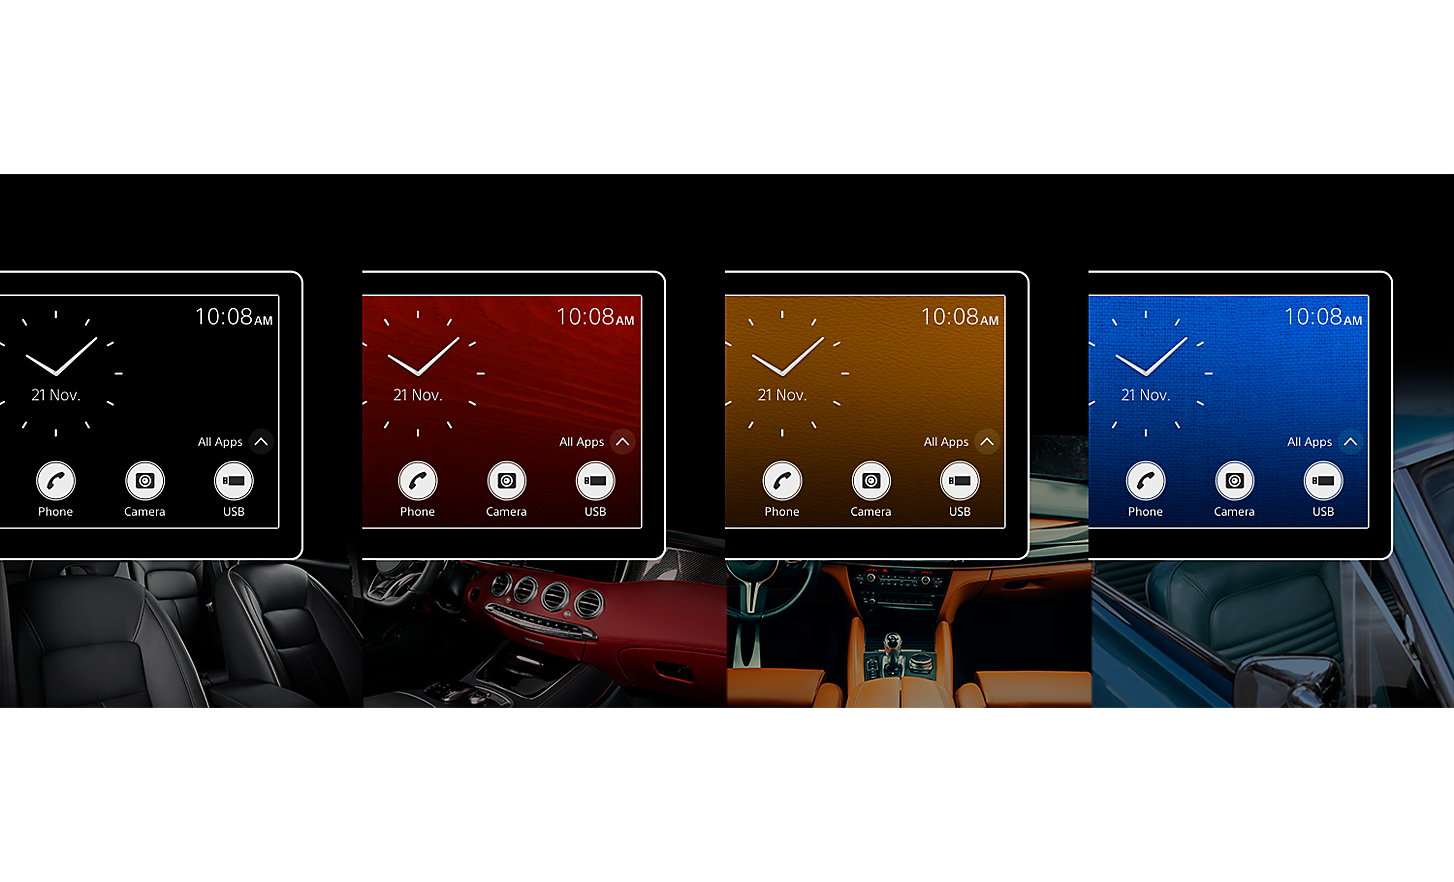 Štyri mediálne prijímače XAV-AX6050 s hodinami a farebným pozadím na obrazovke nad obrázkami interiérov áut v podobných farbách